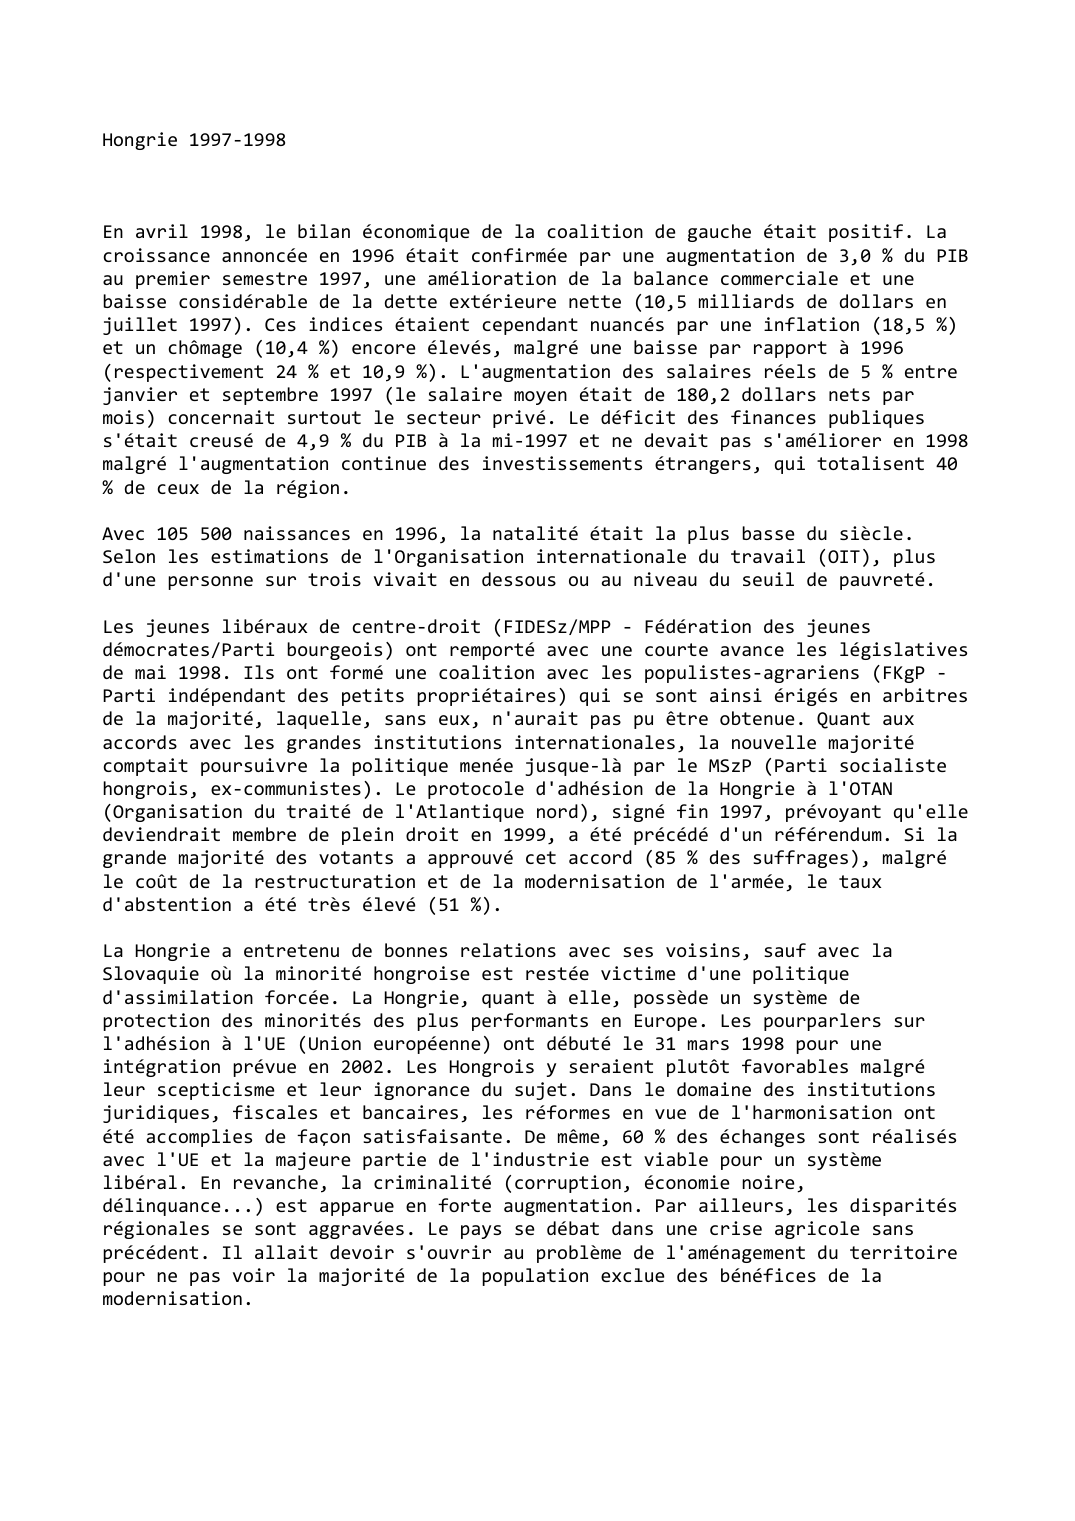 Prévisualisation du document Hongrie (1997-1998)